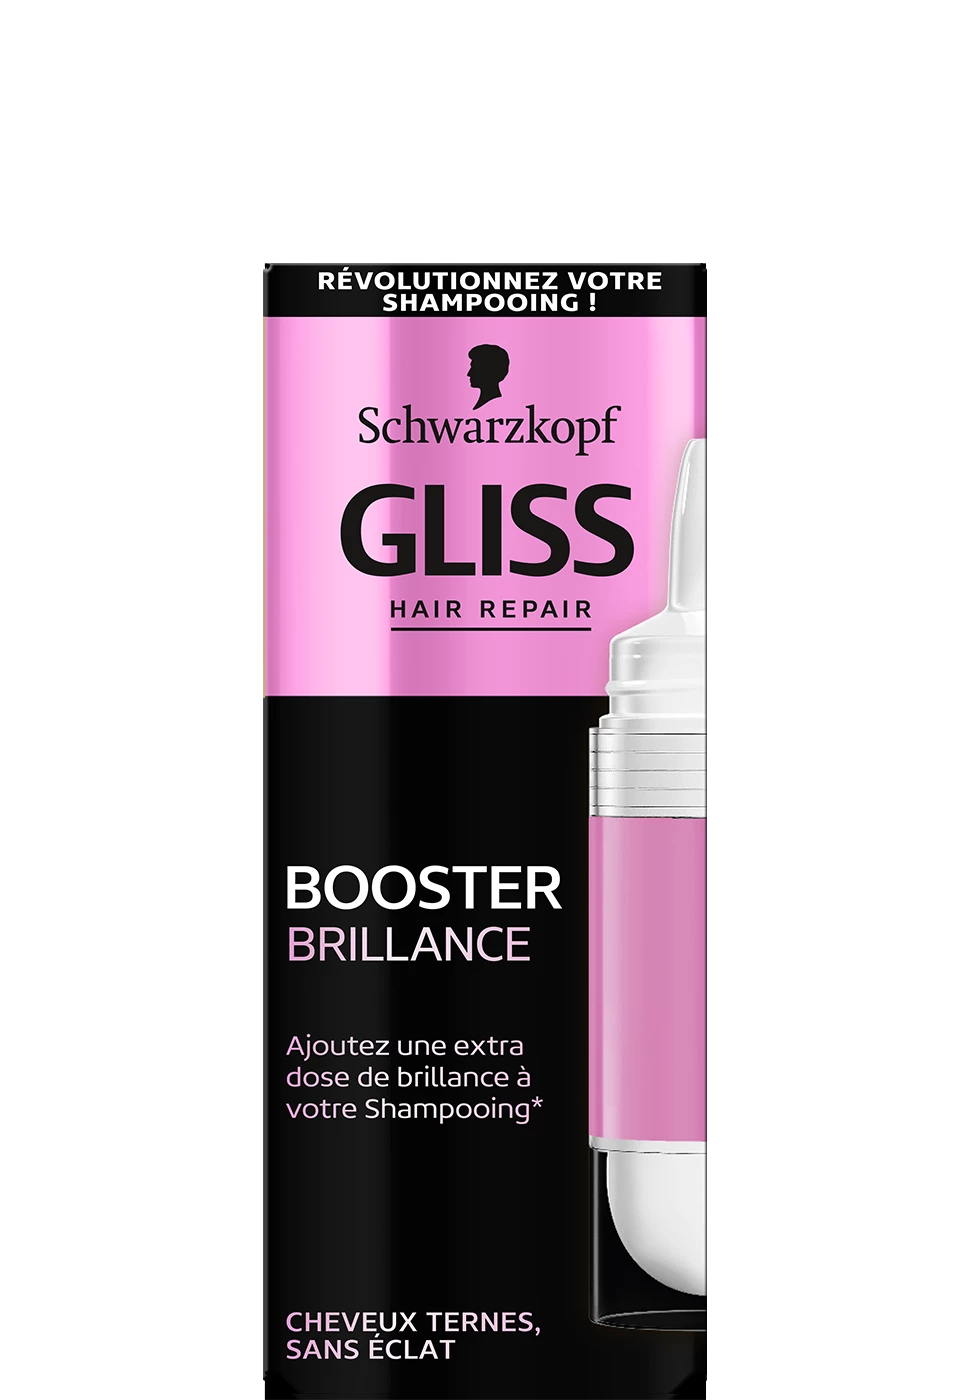 Gliss Booster Brillance 15ml